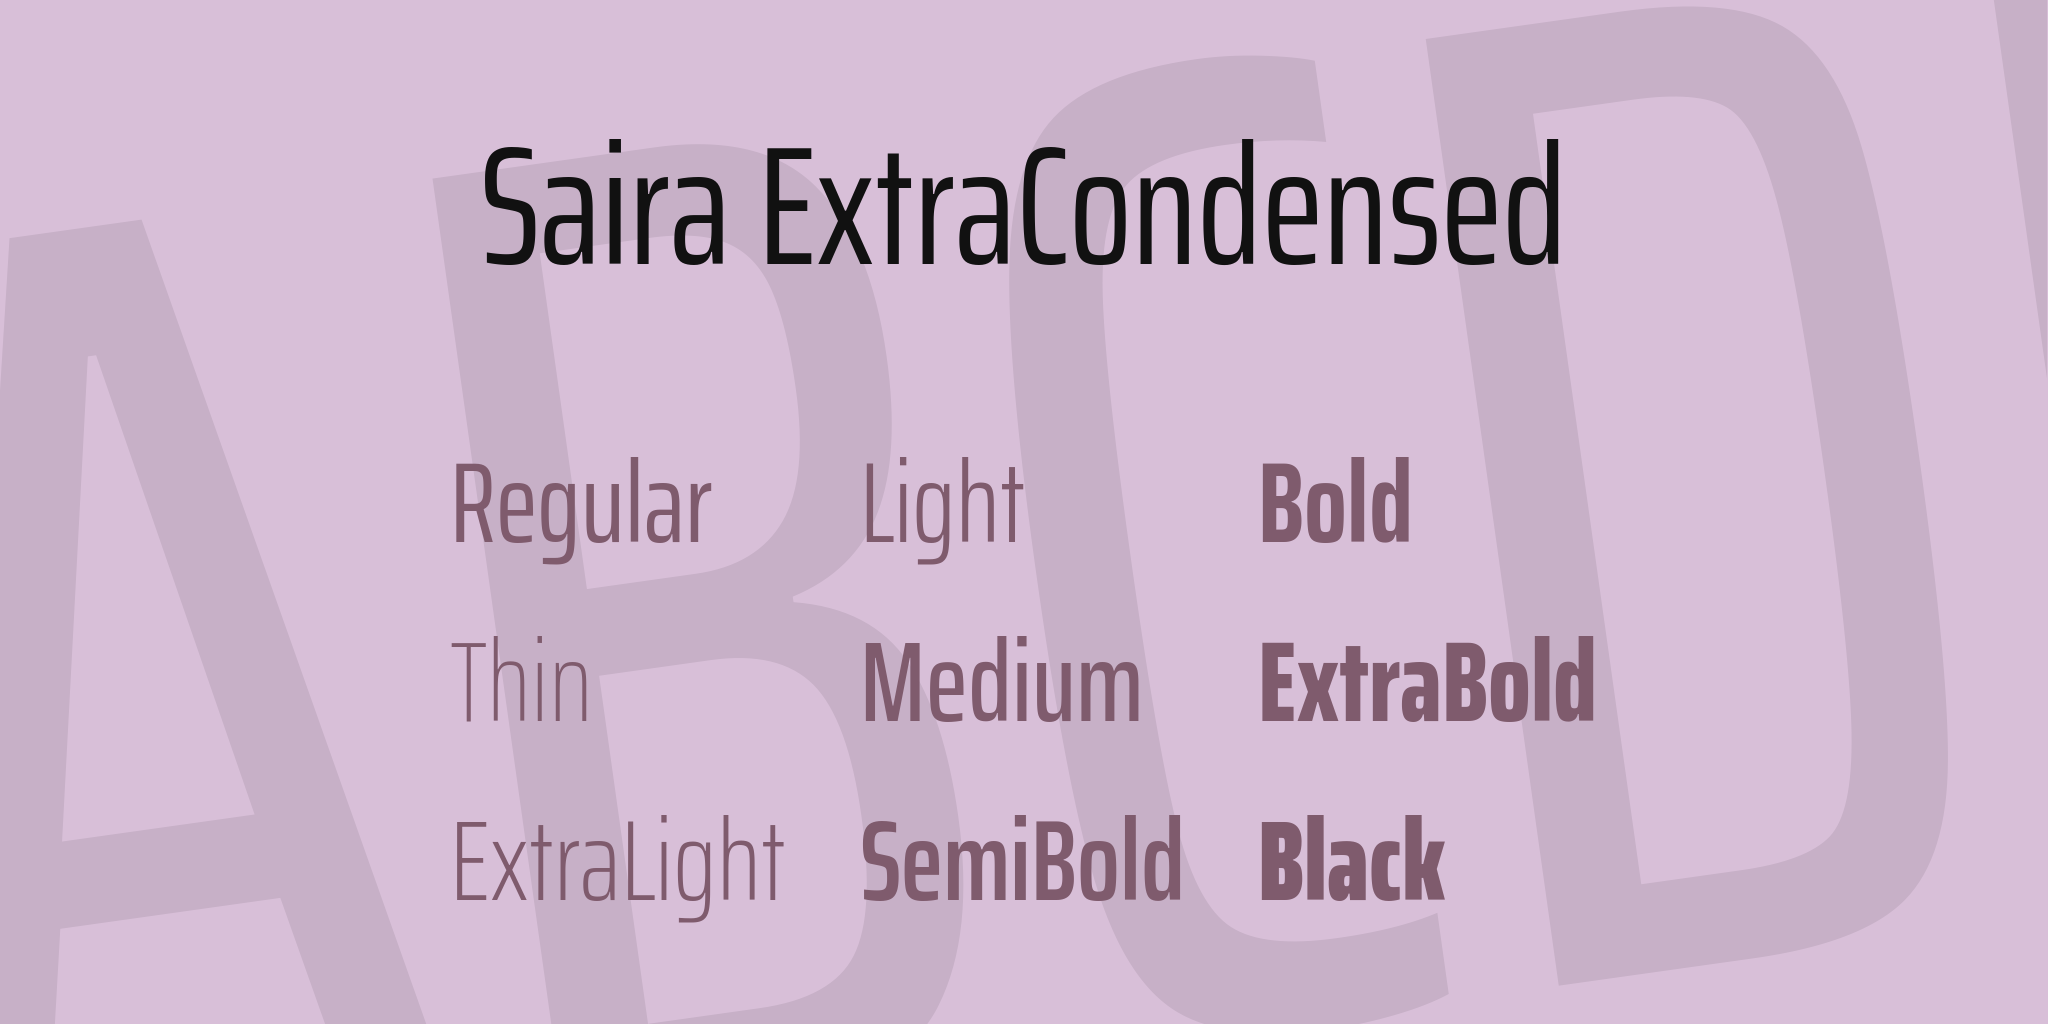 Saira Extra Condensed